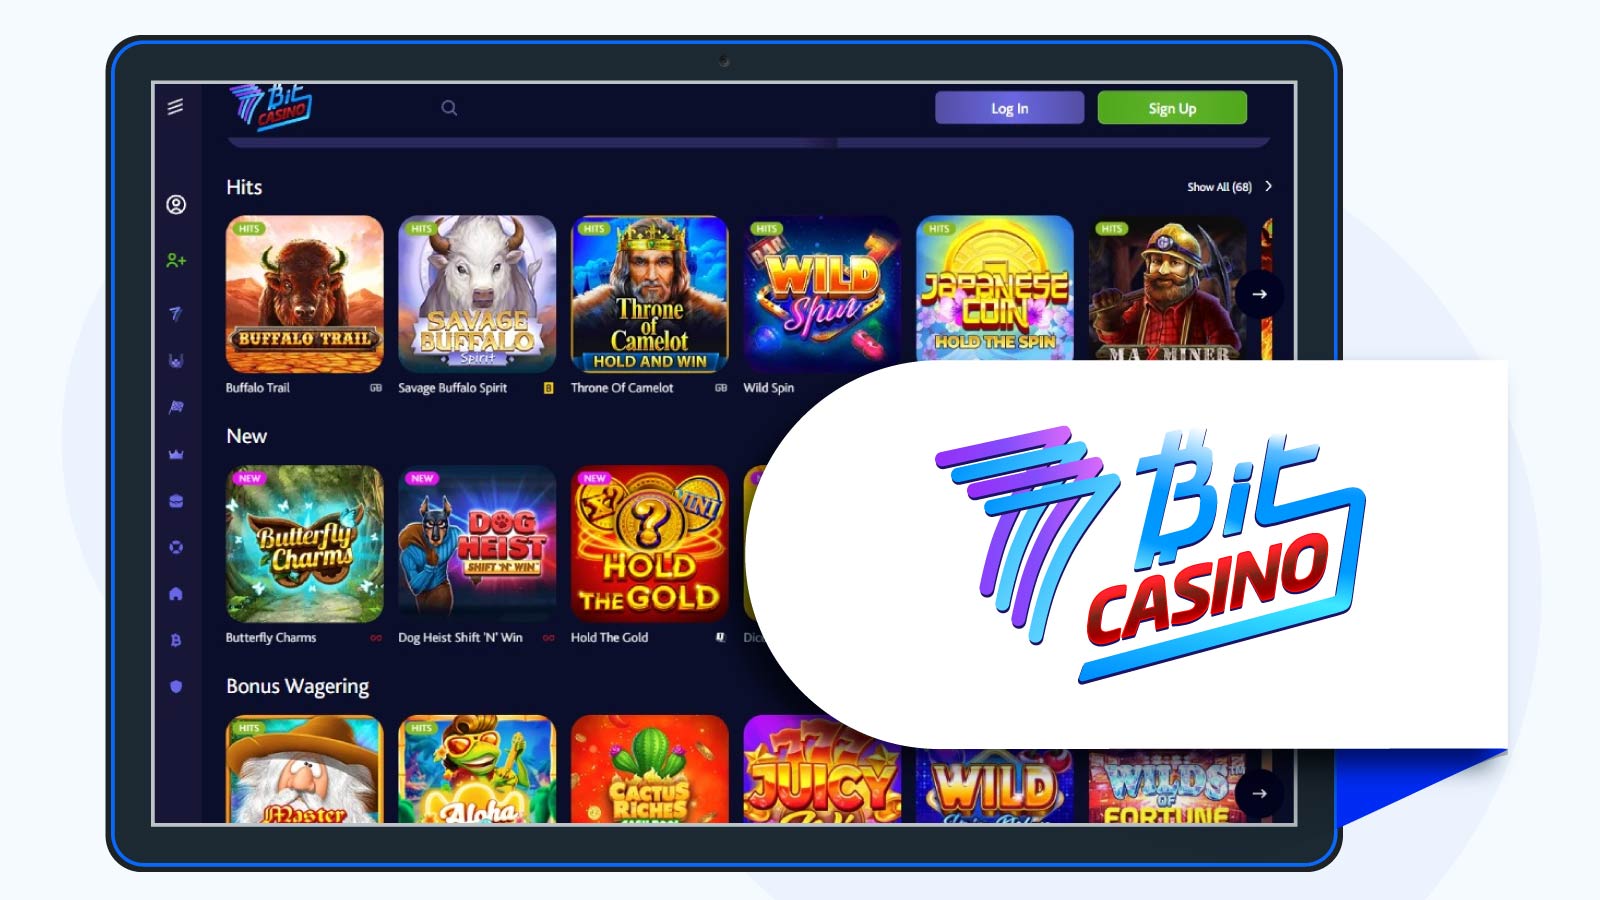 7-bit-casino-Free-Spins-No-Deposit